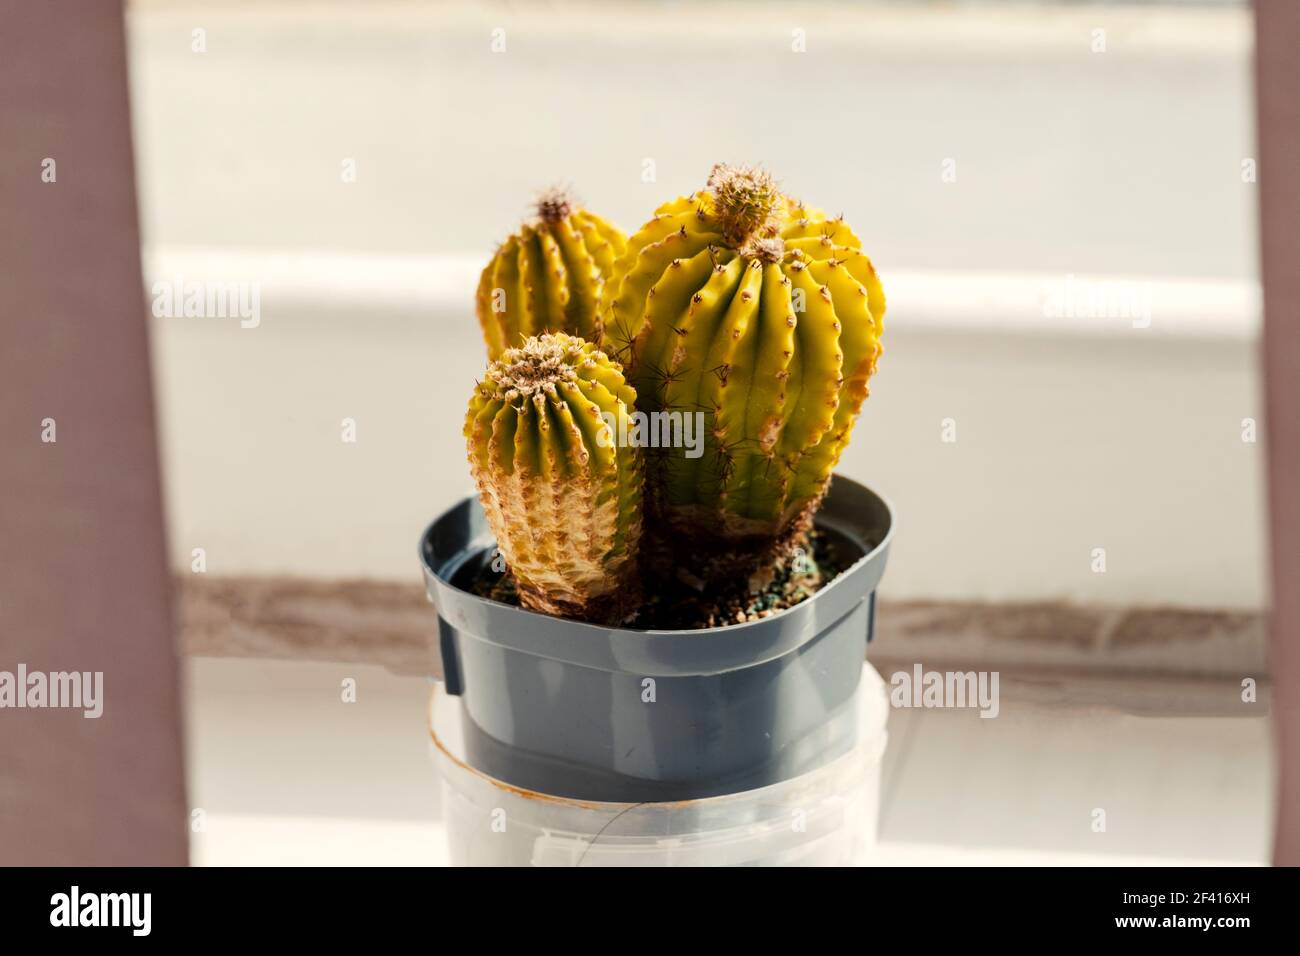 Los cactus están en una olla en el alféizar de la ventana. Planta de habitación en macetas en el jardín del alféizar de la ventana. Los cactus están en una olla en el alféizar de la ventana. Planta de habitación en maceta en el alféizar. Foto de stock